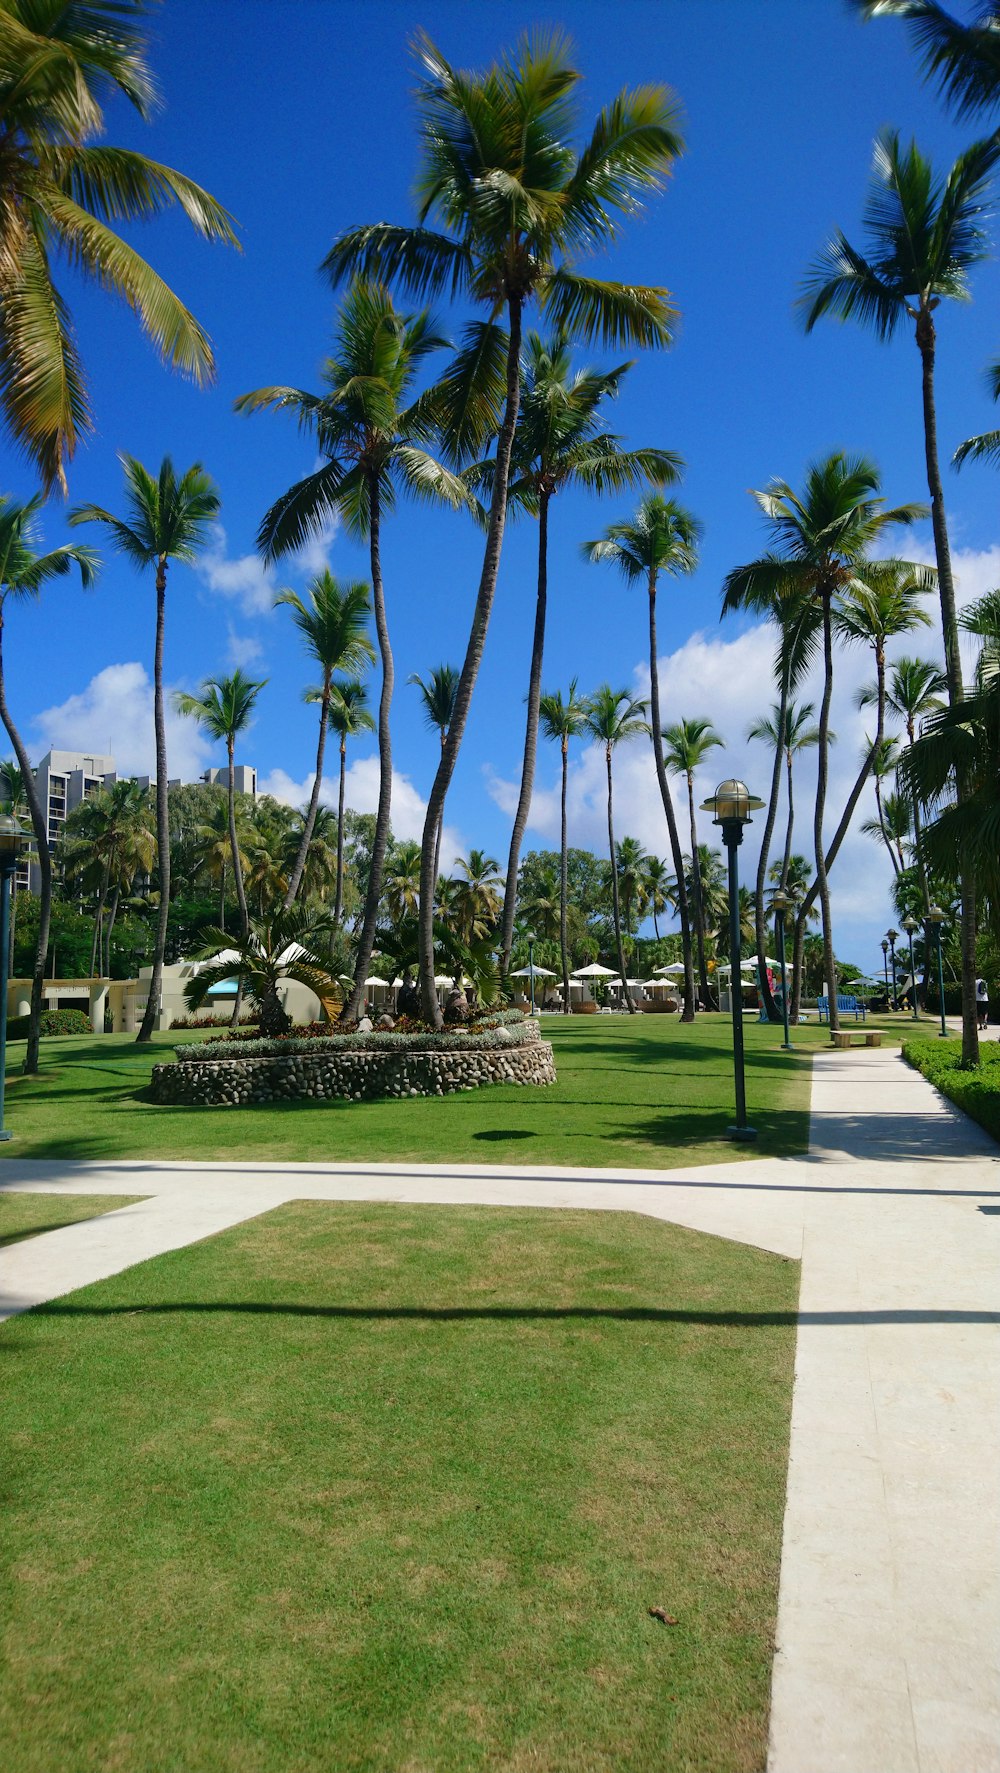 Un parc avec des palmiers par une journée ensoleillée